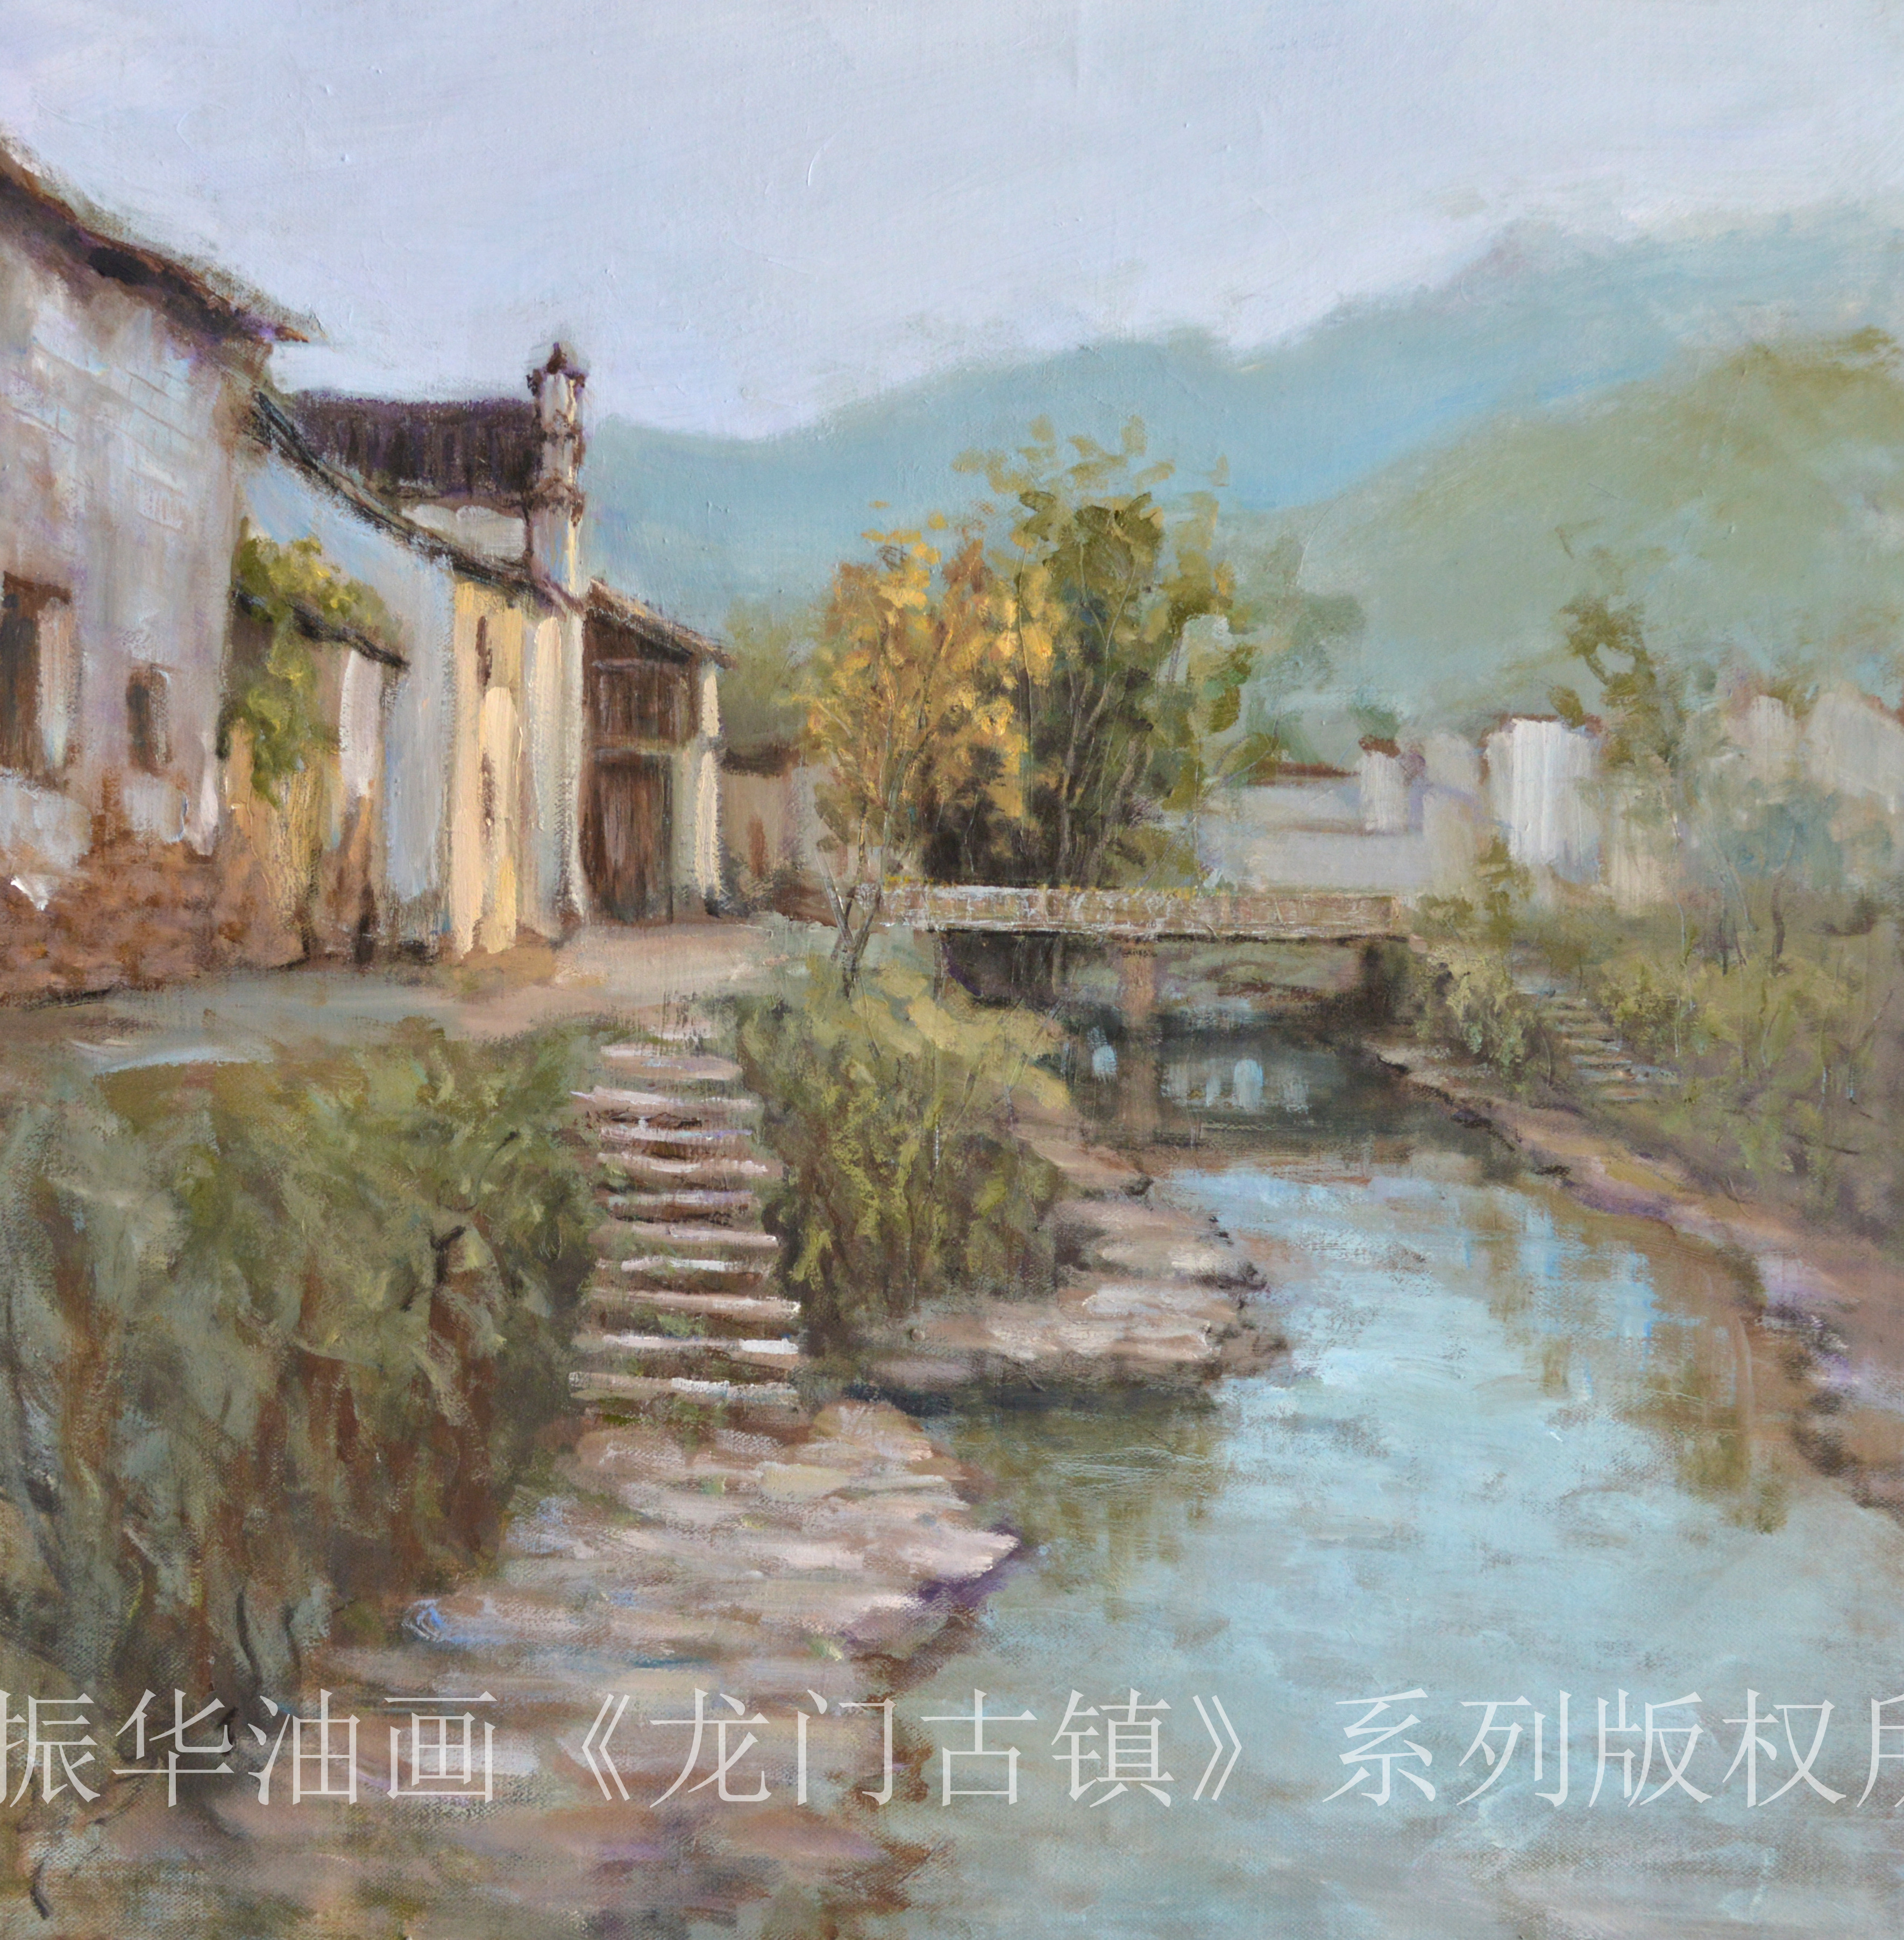 海派油画家冯振华风景油画写生《龙门古镇》系列